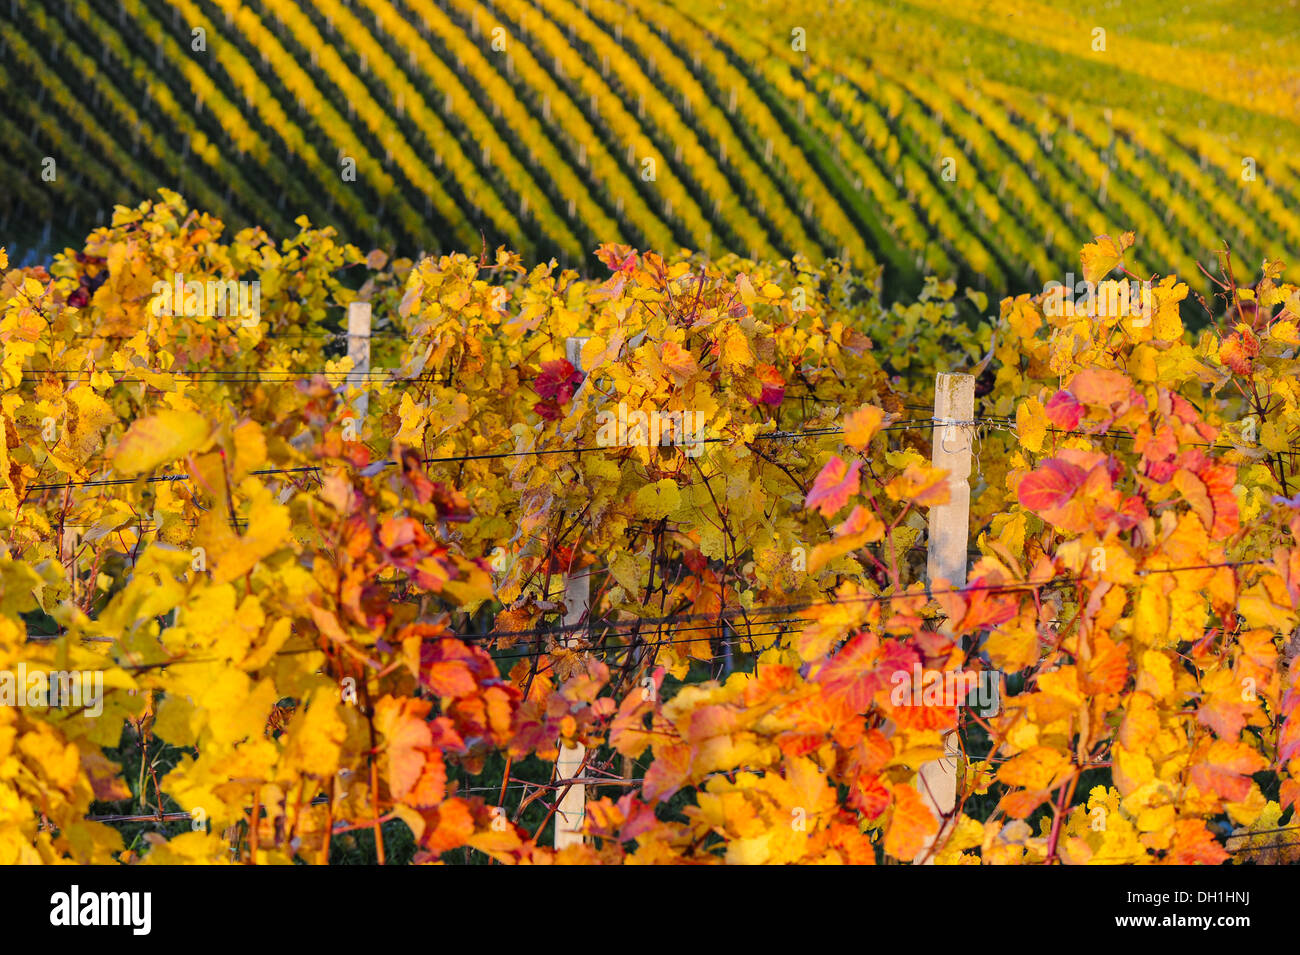 Suedsteirische Weinstrasse, Southern Styria wine route in autumn, Austria, Styria, Southern Styria, Ratsch Stock Photo